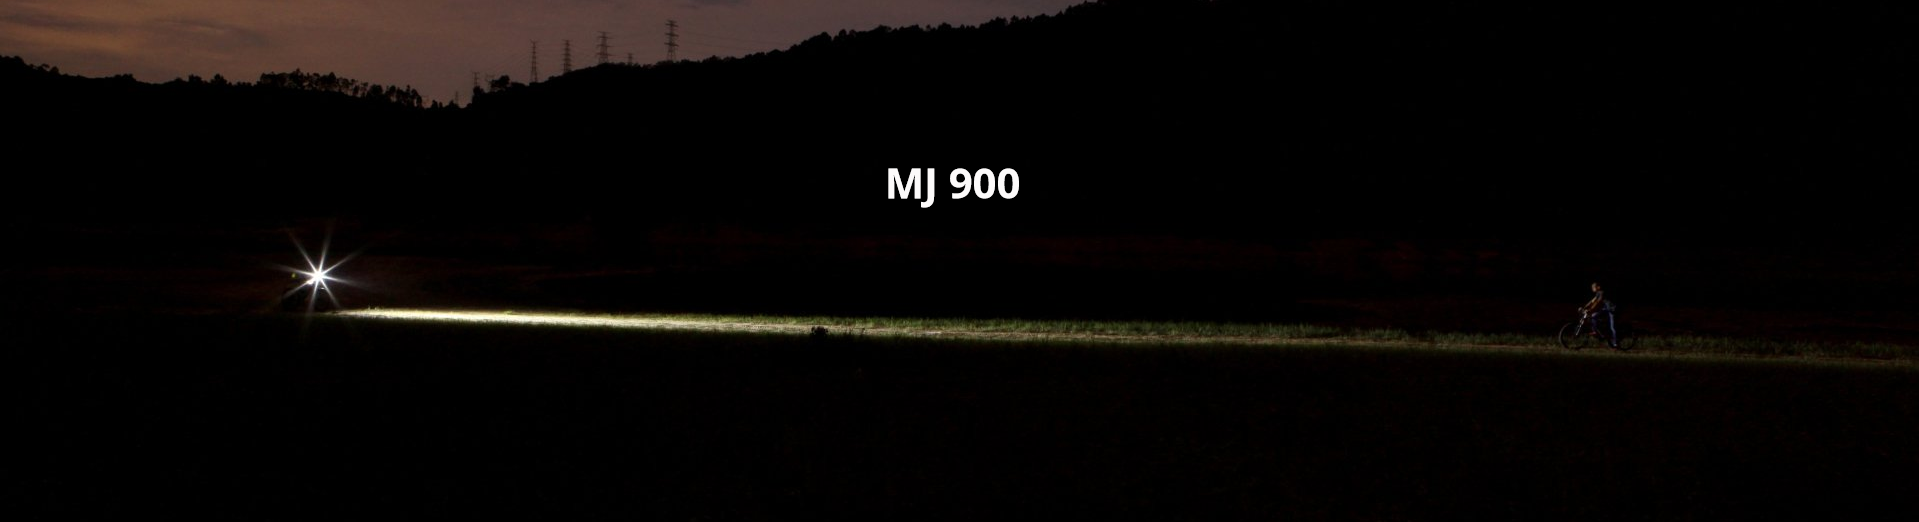 MJ 900 Helmlampe mit Fahrradfahrer im Wald und langem Lichtstrahl